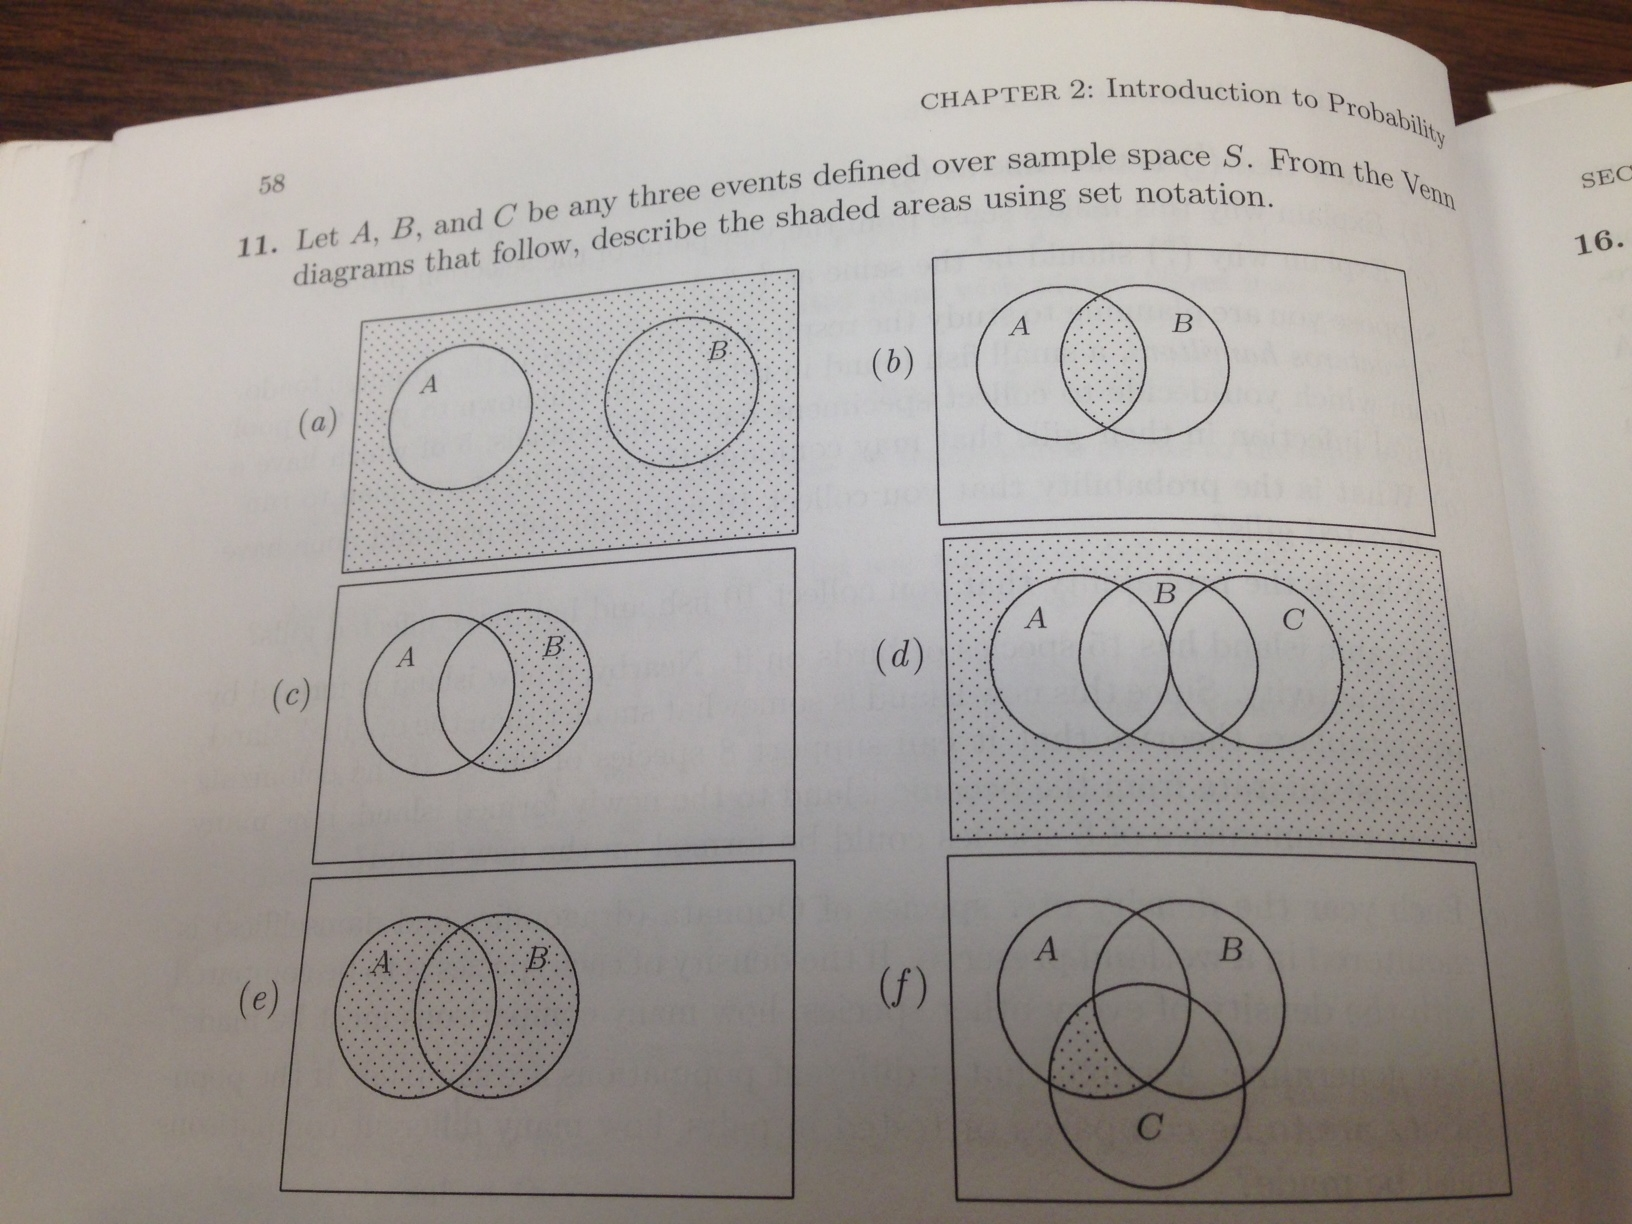 A b u a c ответы. Круги Эйлера. A B круги Эйлера. ((A∪B)\C)∪(C\\(A∩B)) круги Эйлера. Круги Эйлера Юриспруденция.